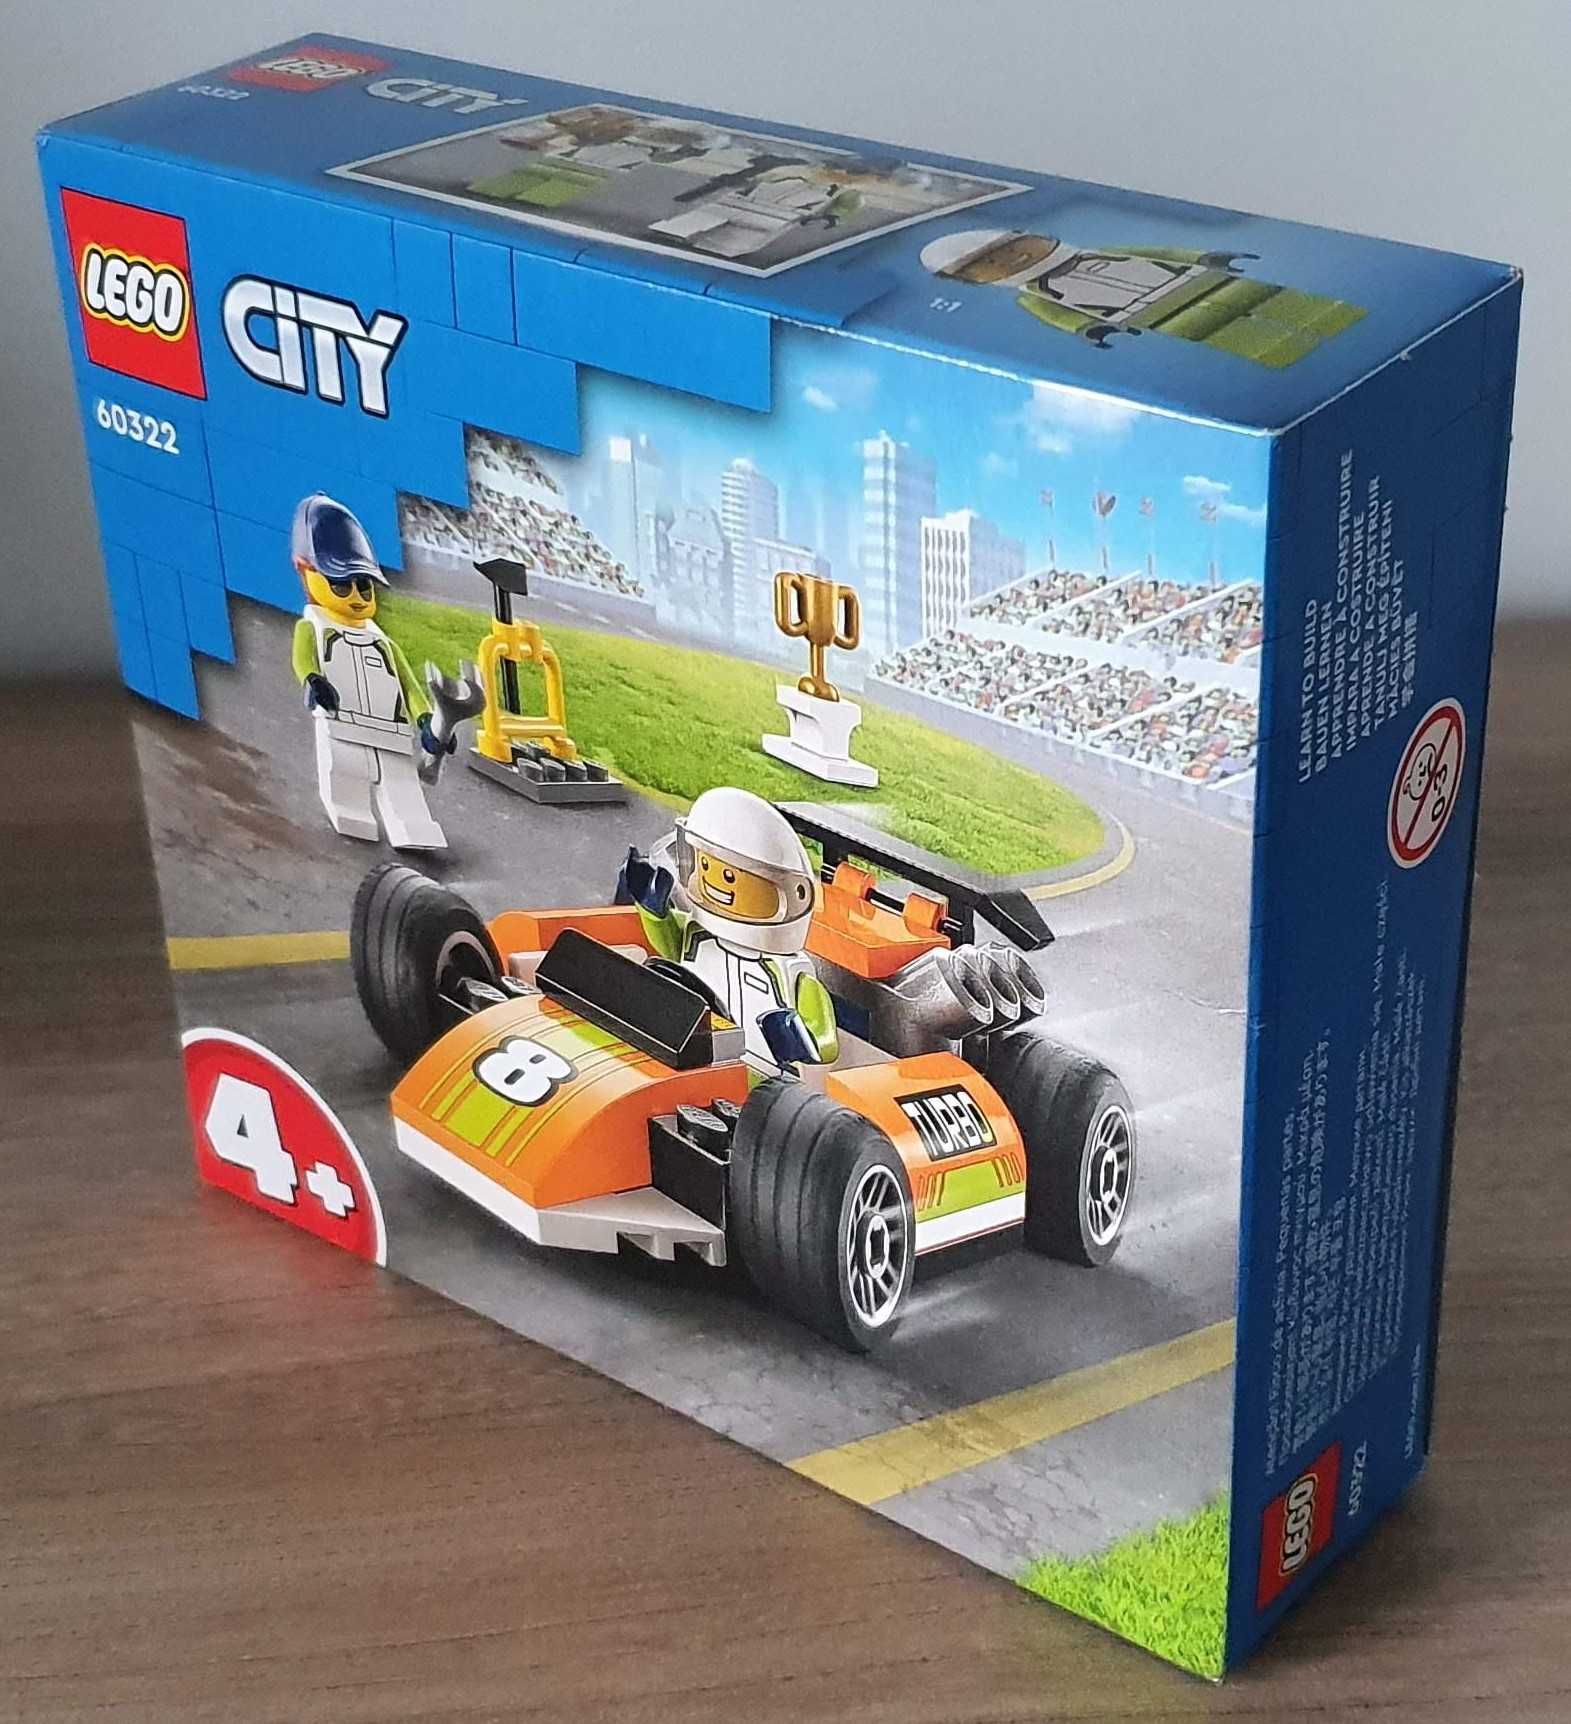 LEGO 60322 City - Samochód wyścigowy nowe